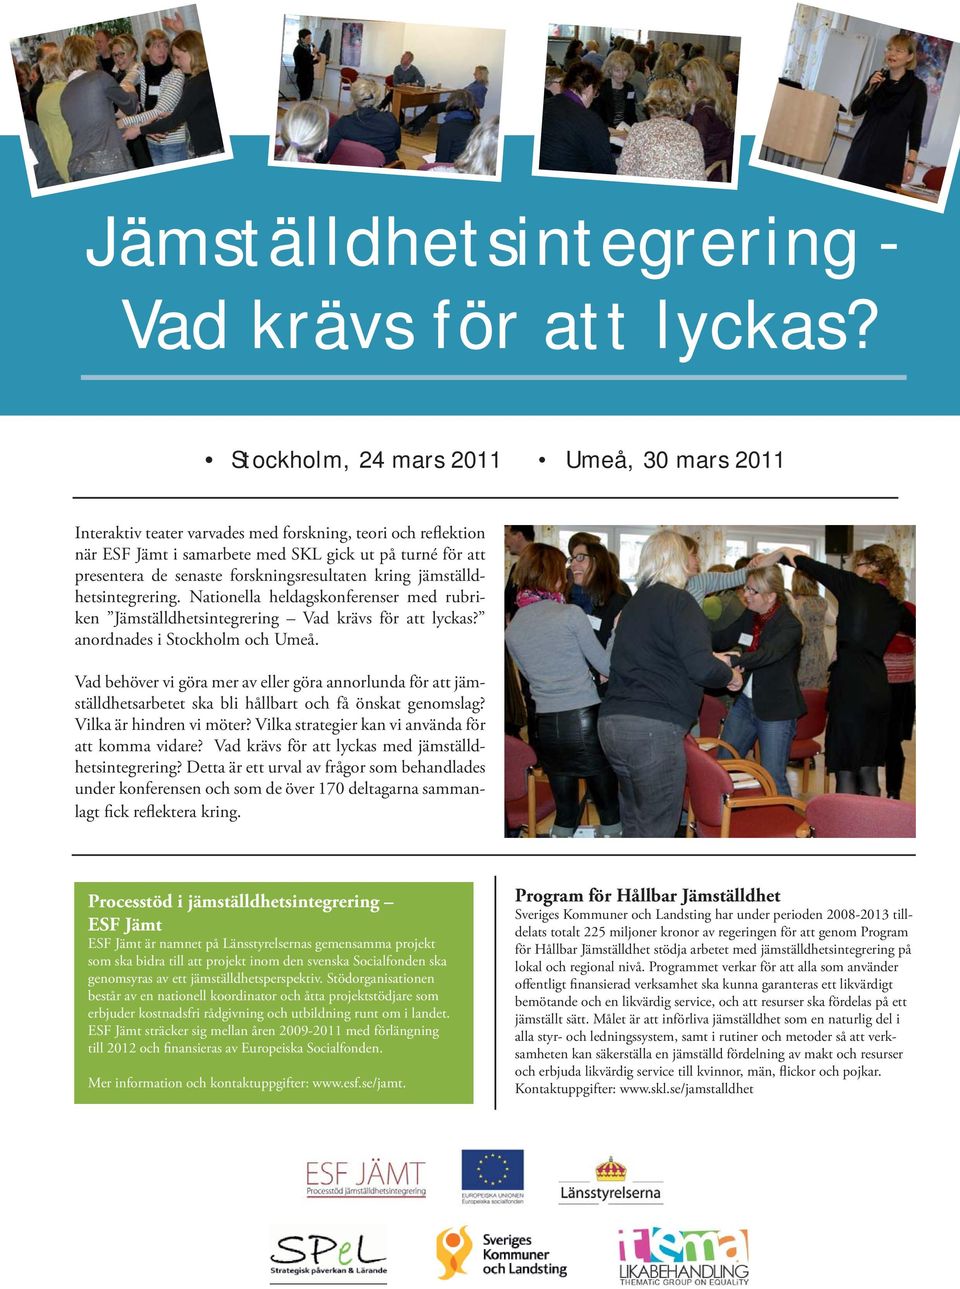 forskningsresultaten kring jämställdhetsintegrering. Nationella heldagskonferenser med rubriken Jämställdhetsintegrering Vad krävs för att lyckas? anordnades i Stockholm och Umeå.